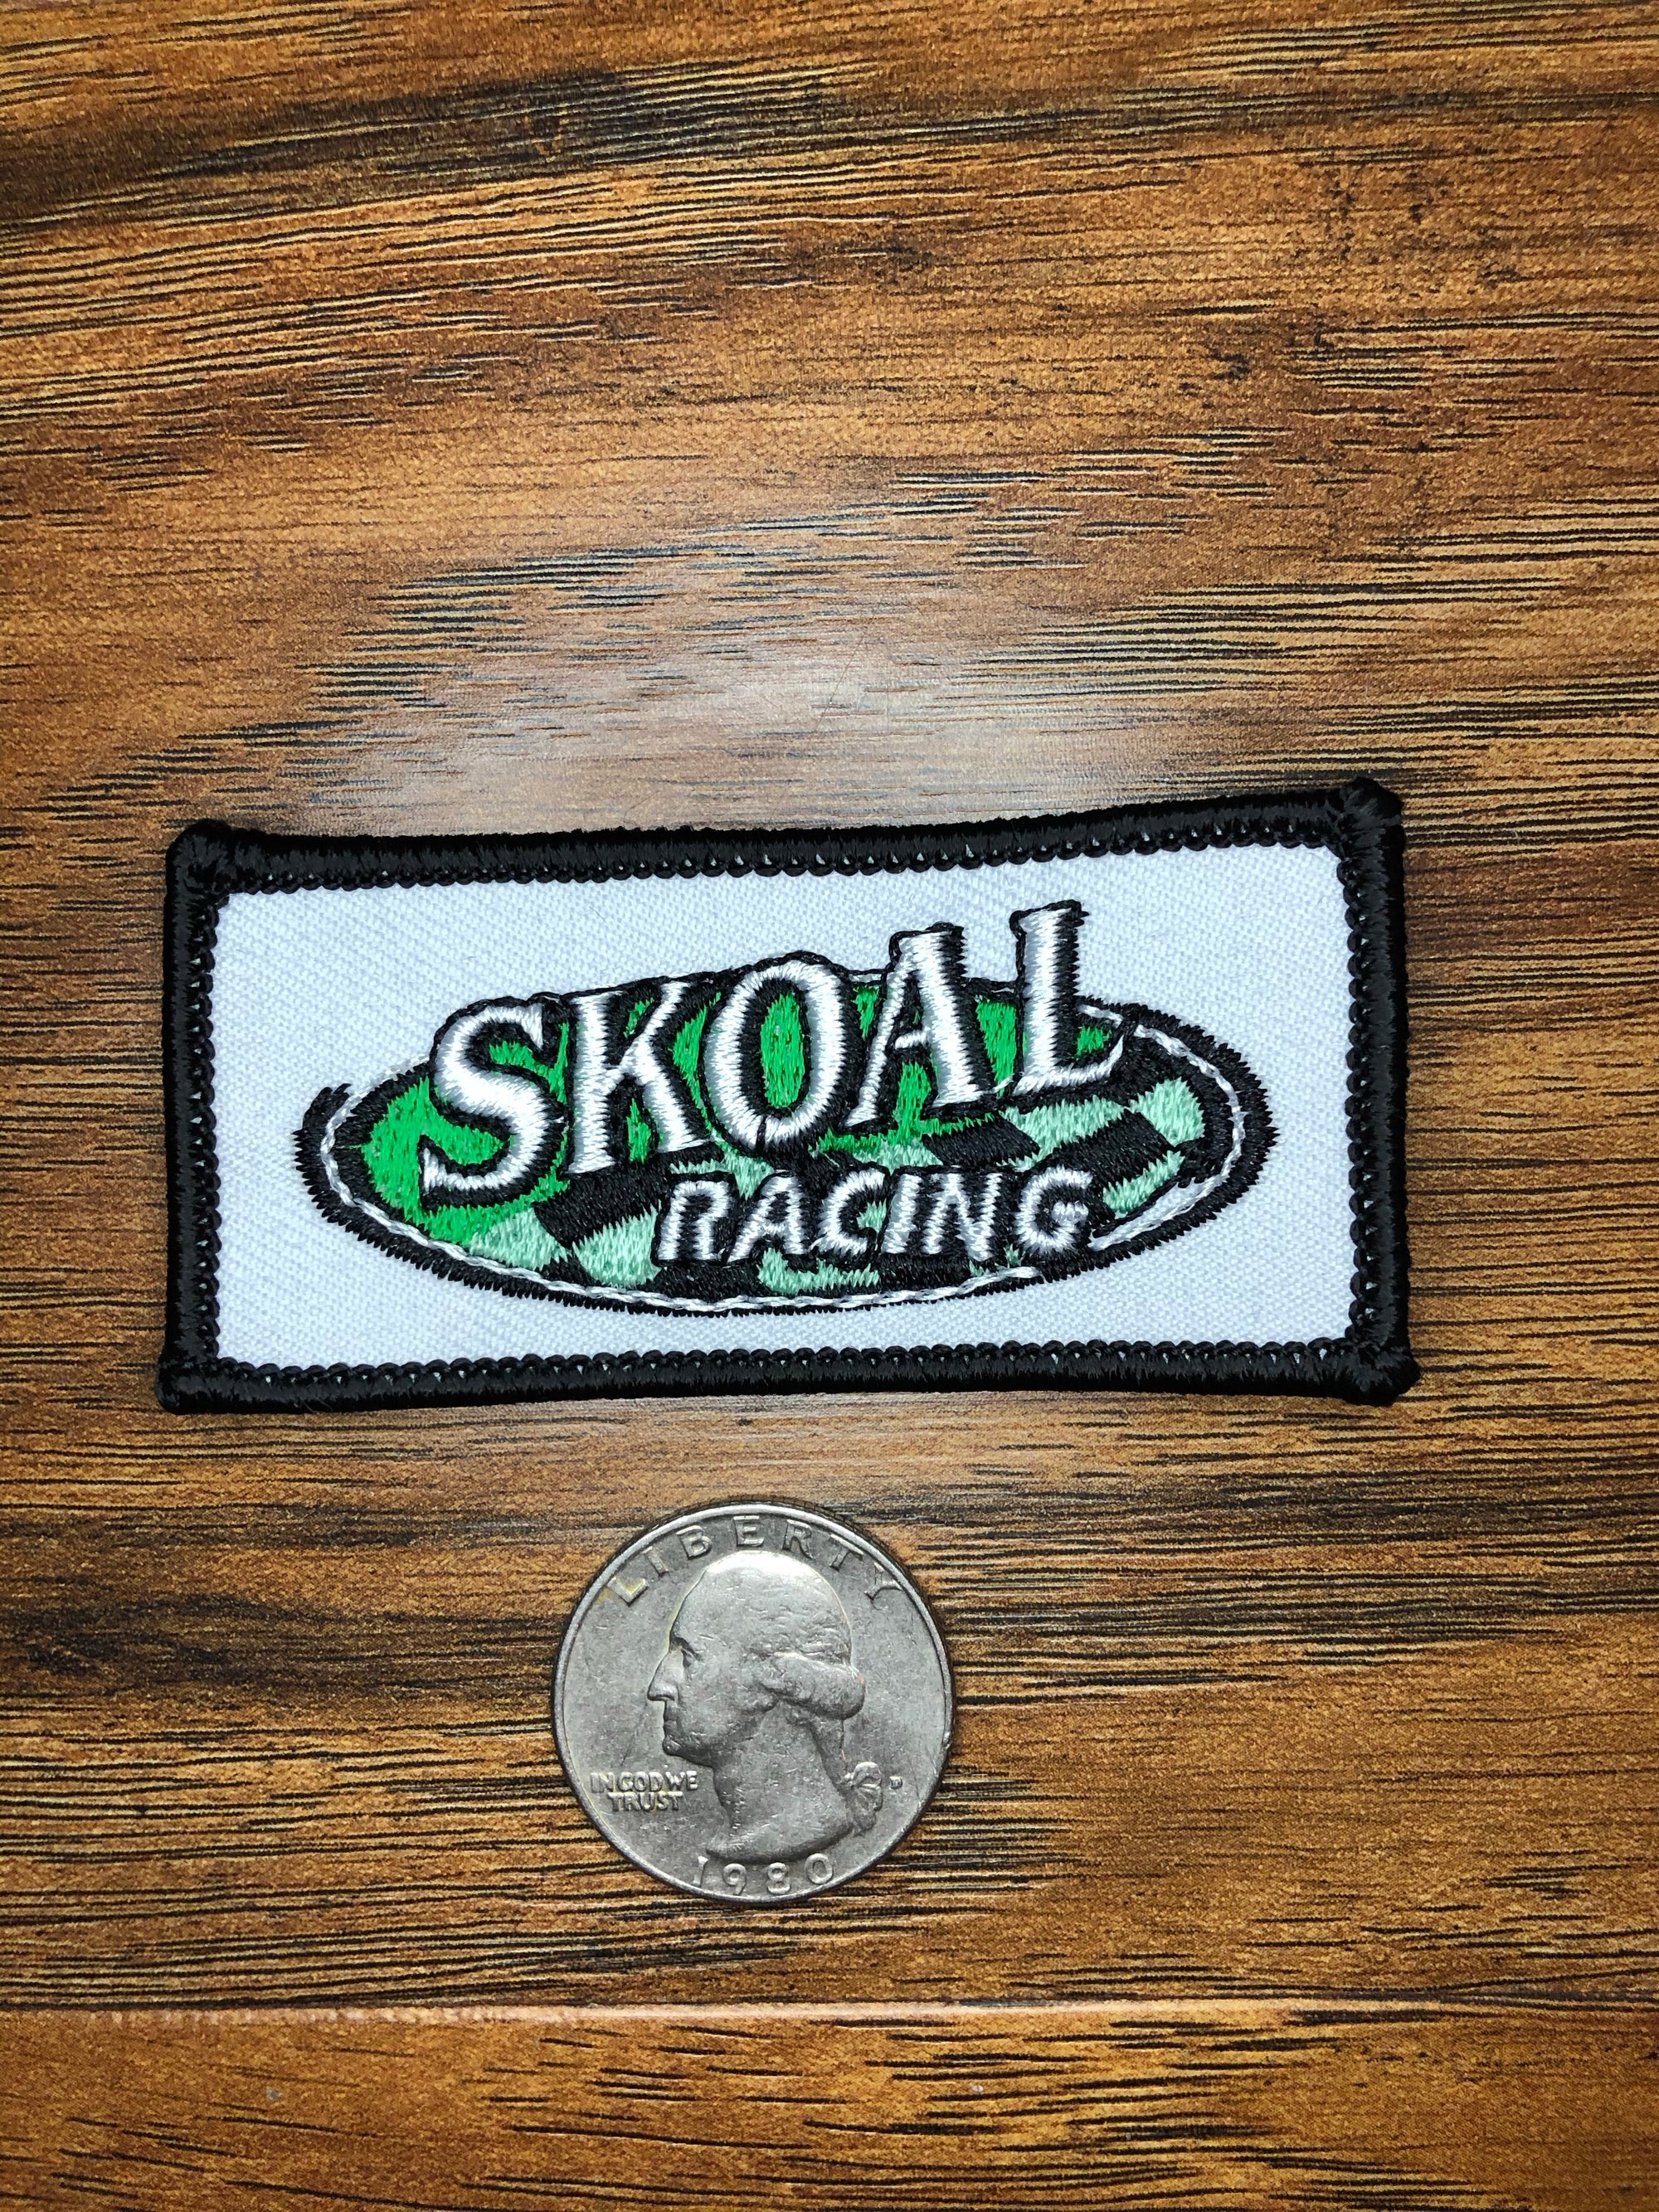 Vintage Skoal Racing